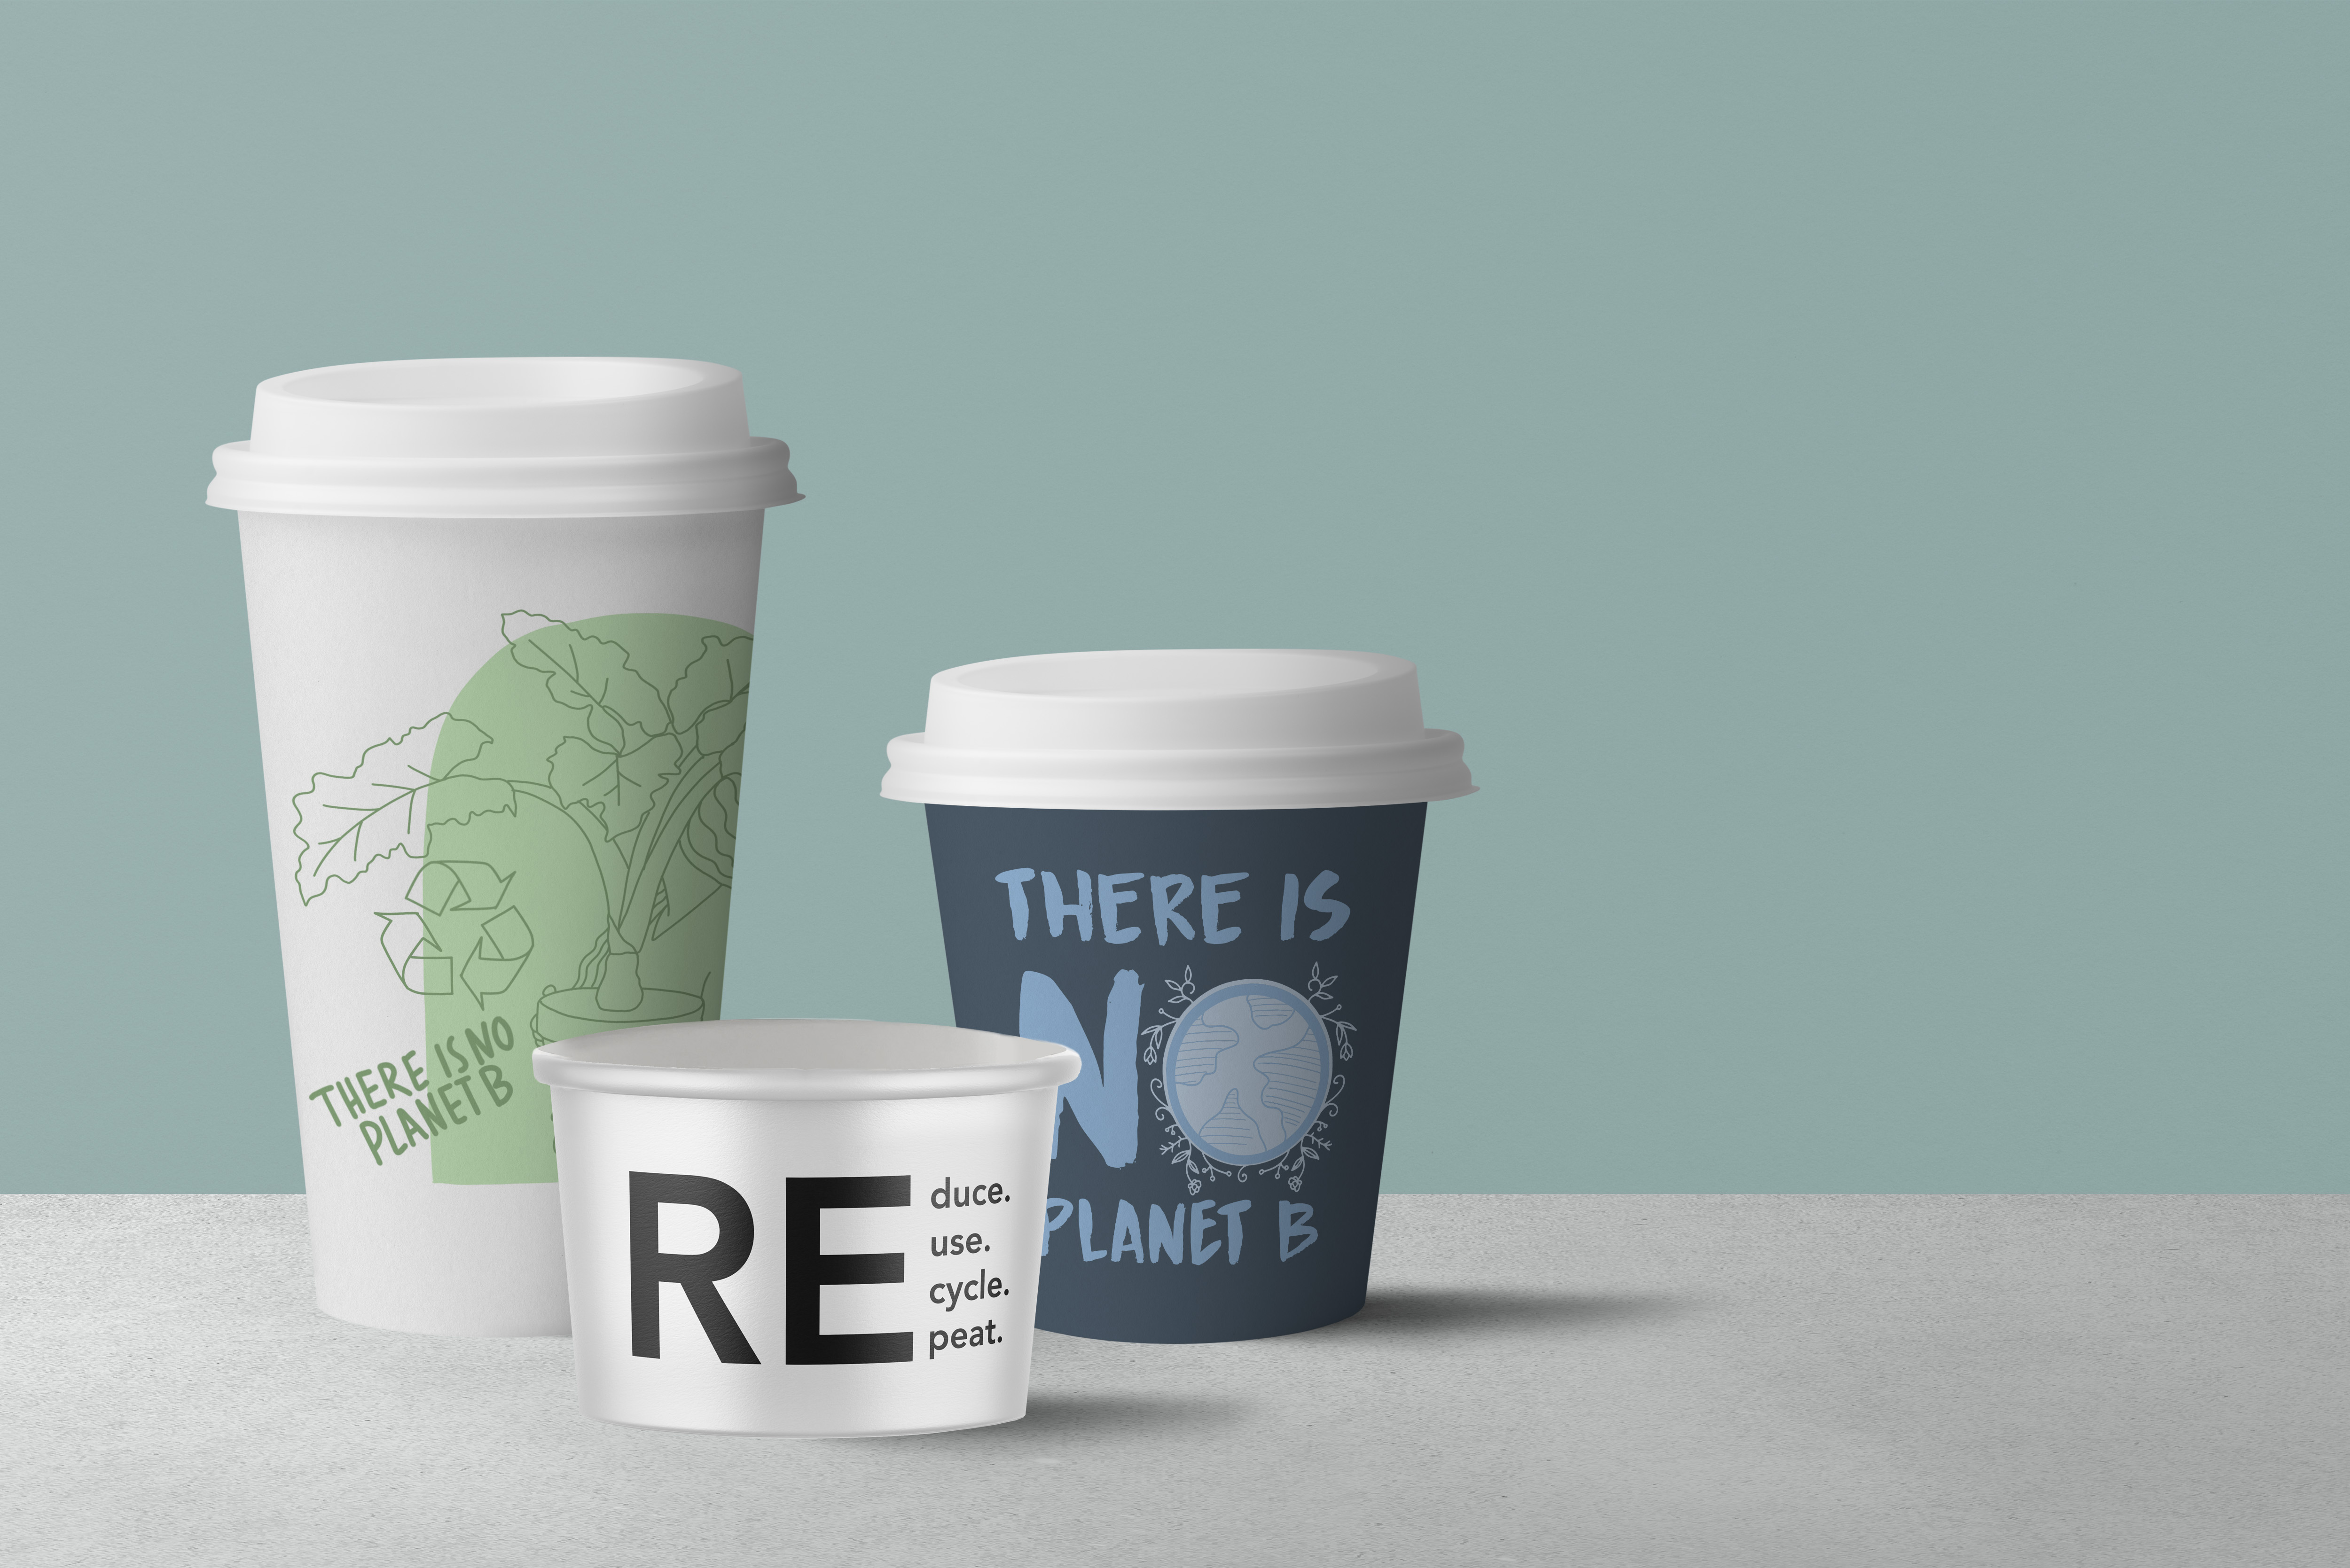 100% återvinningsbar och
verkligt hållbara produkter